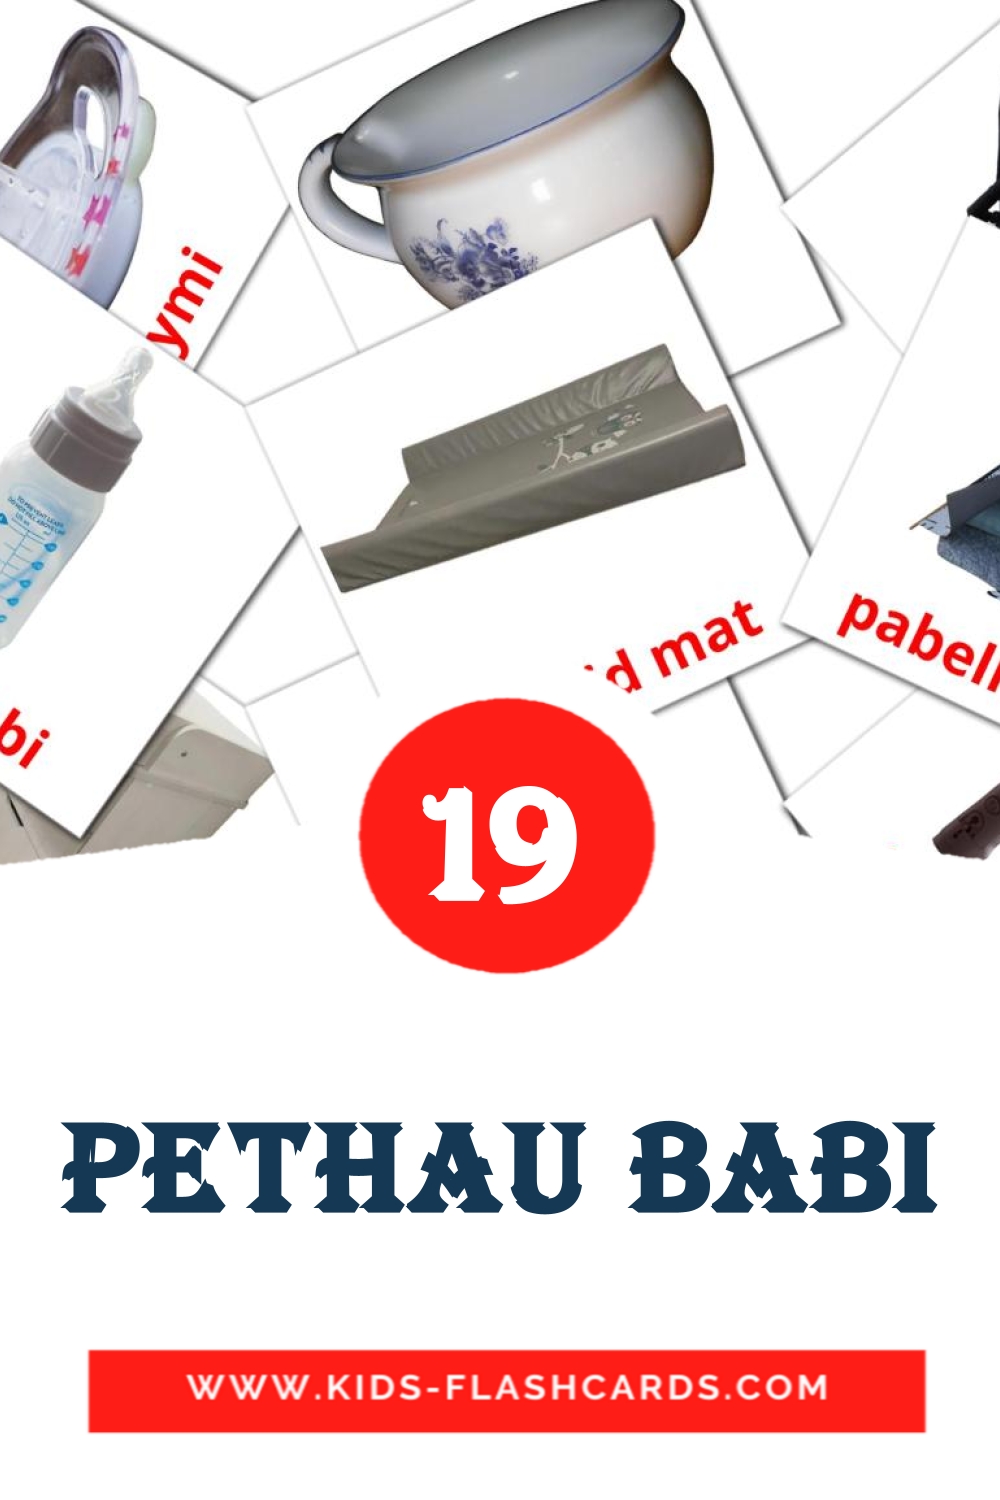 19 tarjetas didacticas de Pethau babi para el jardín de infancia en galés